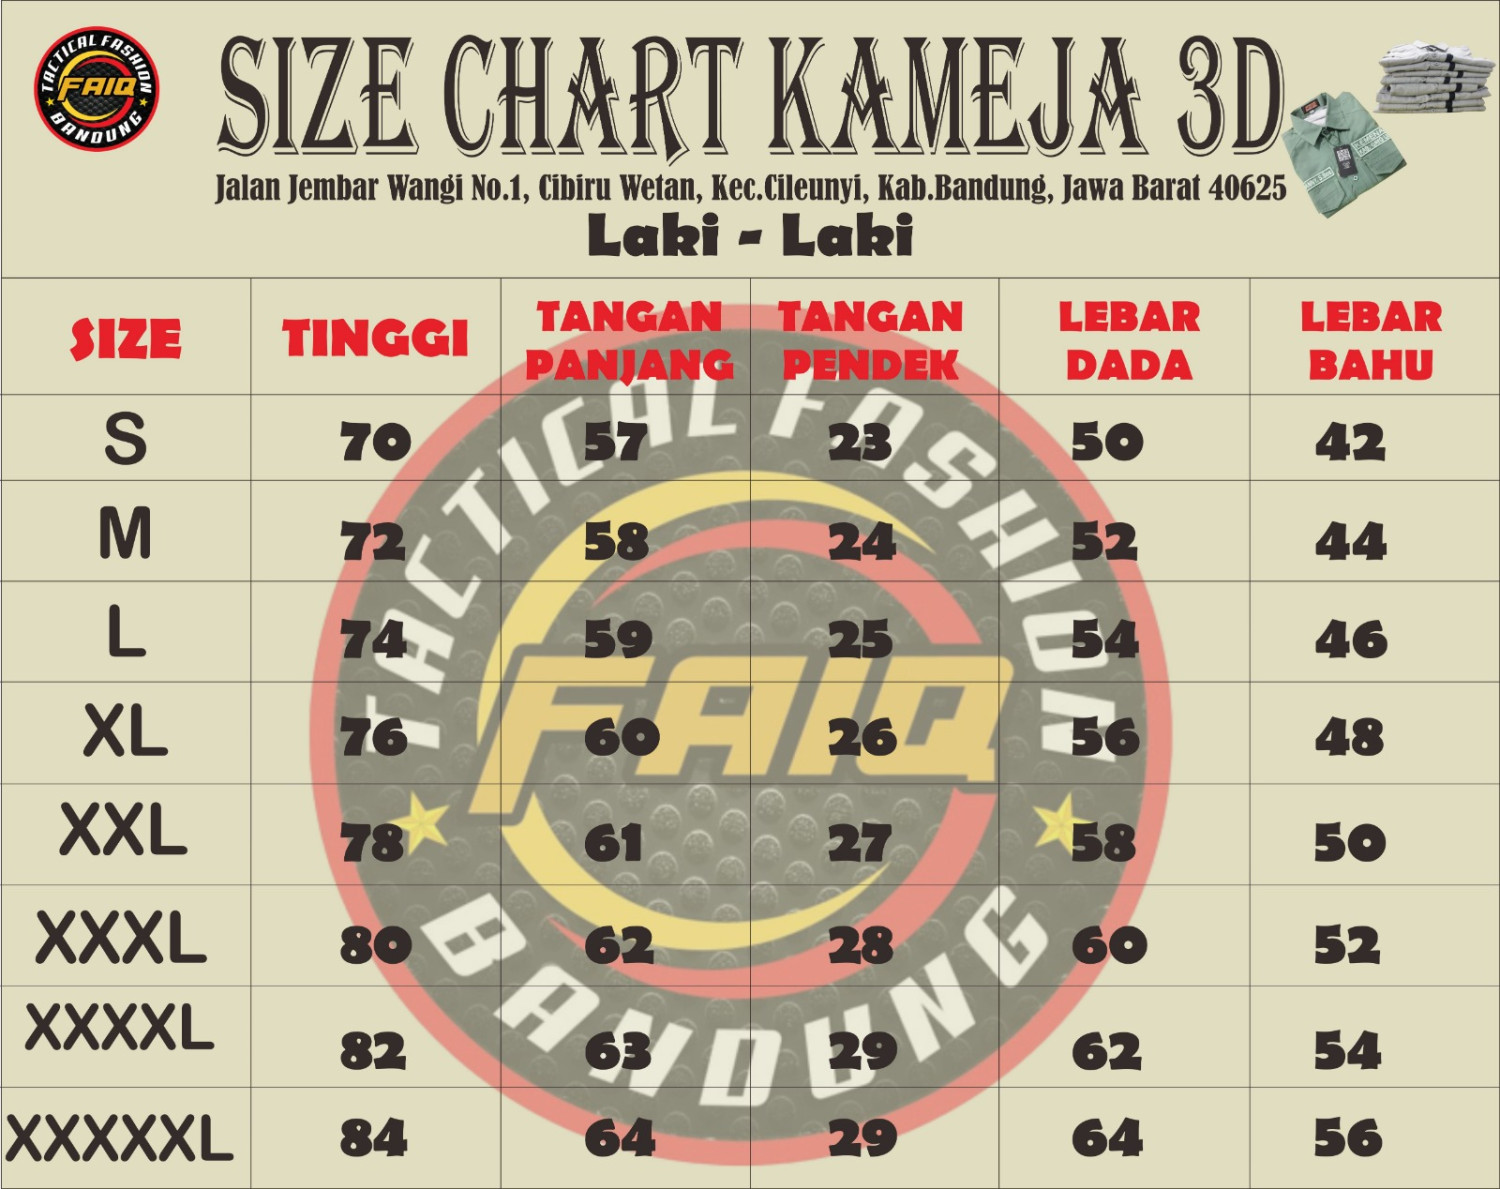 Tactical Fashion Size Chart Kemeja Laki-Laki